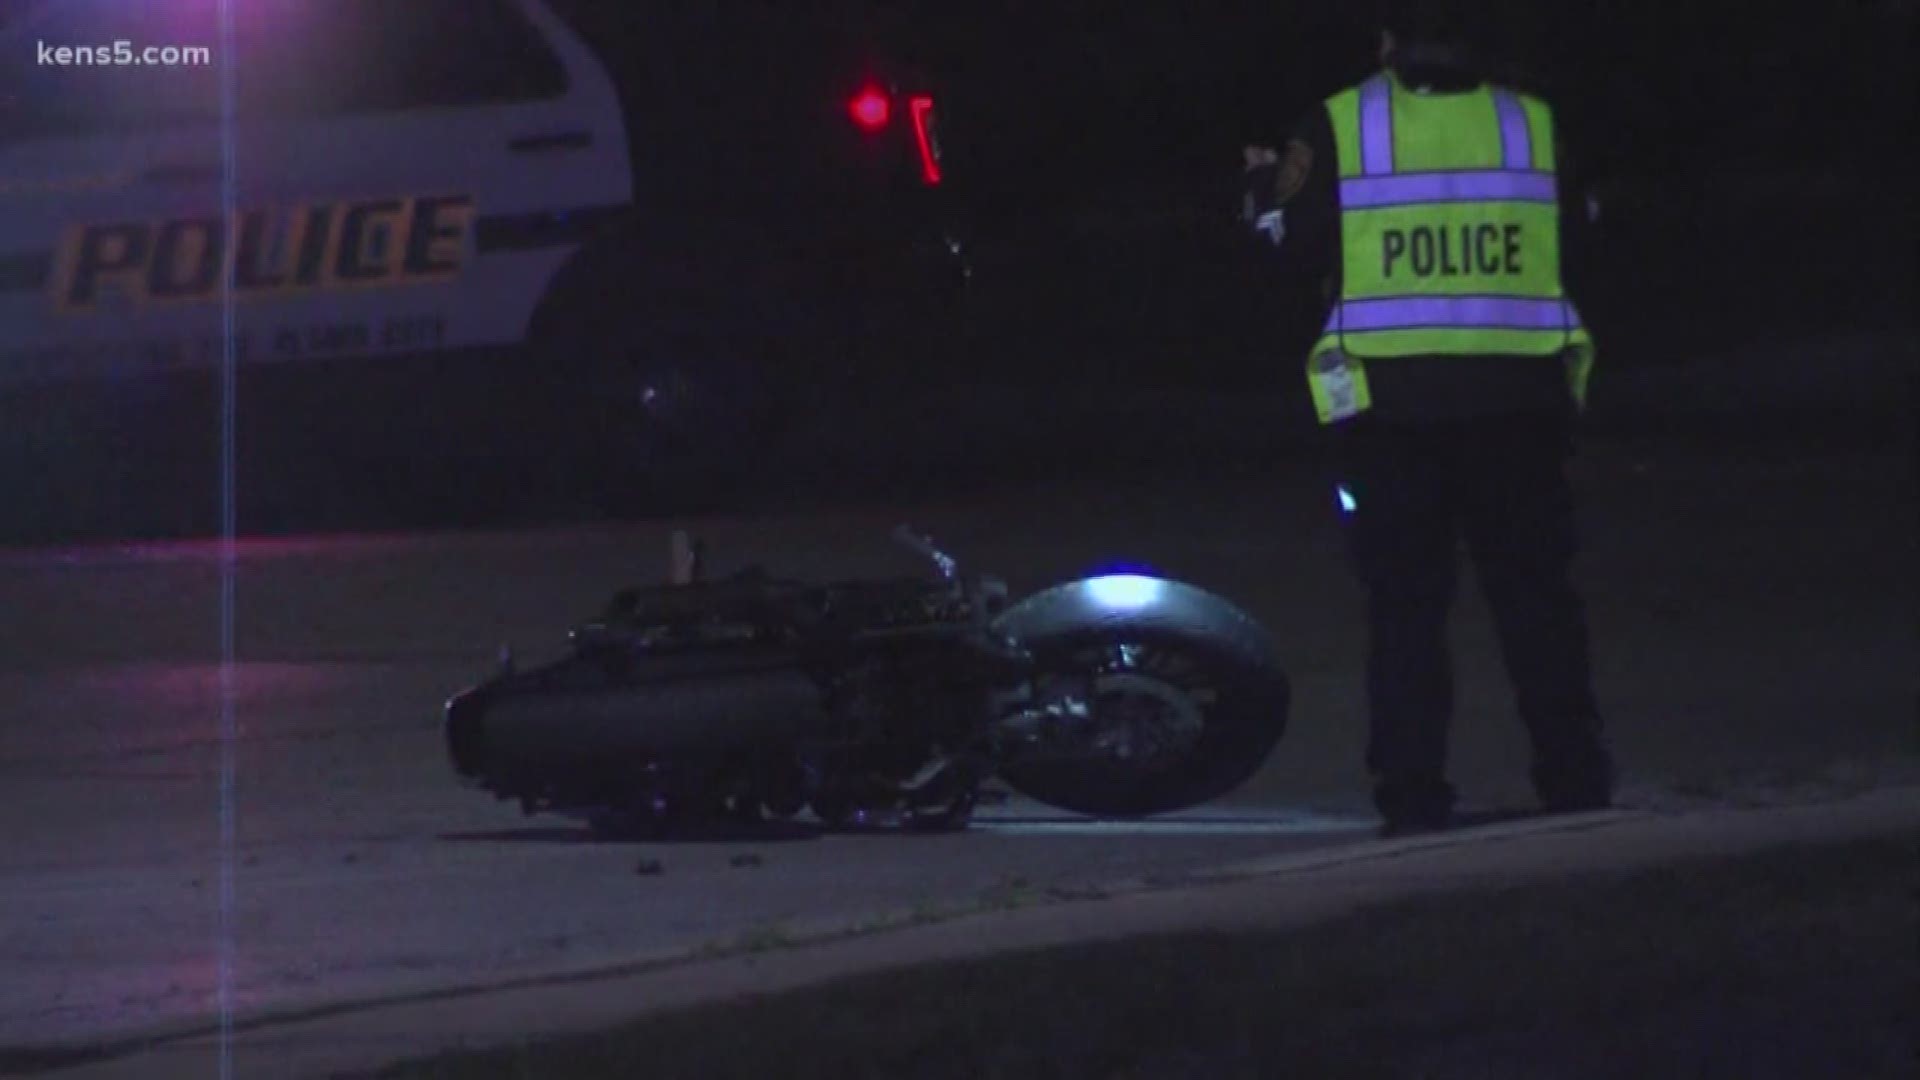 A biker died following an accident overnight.